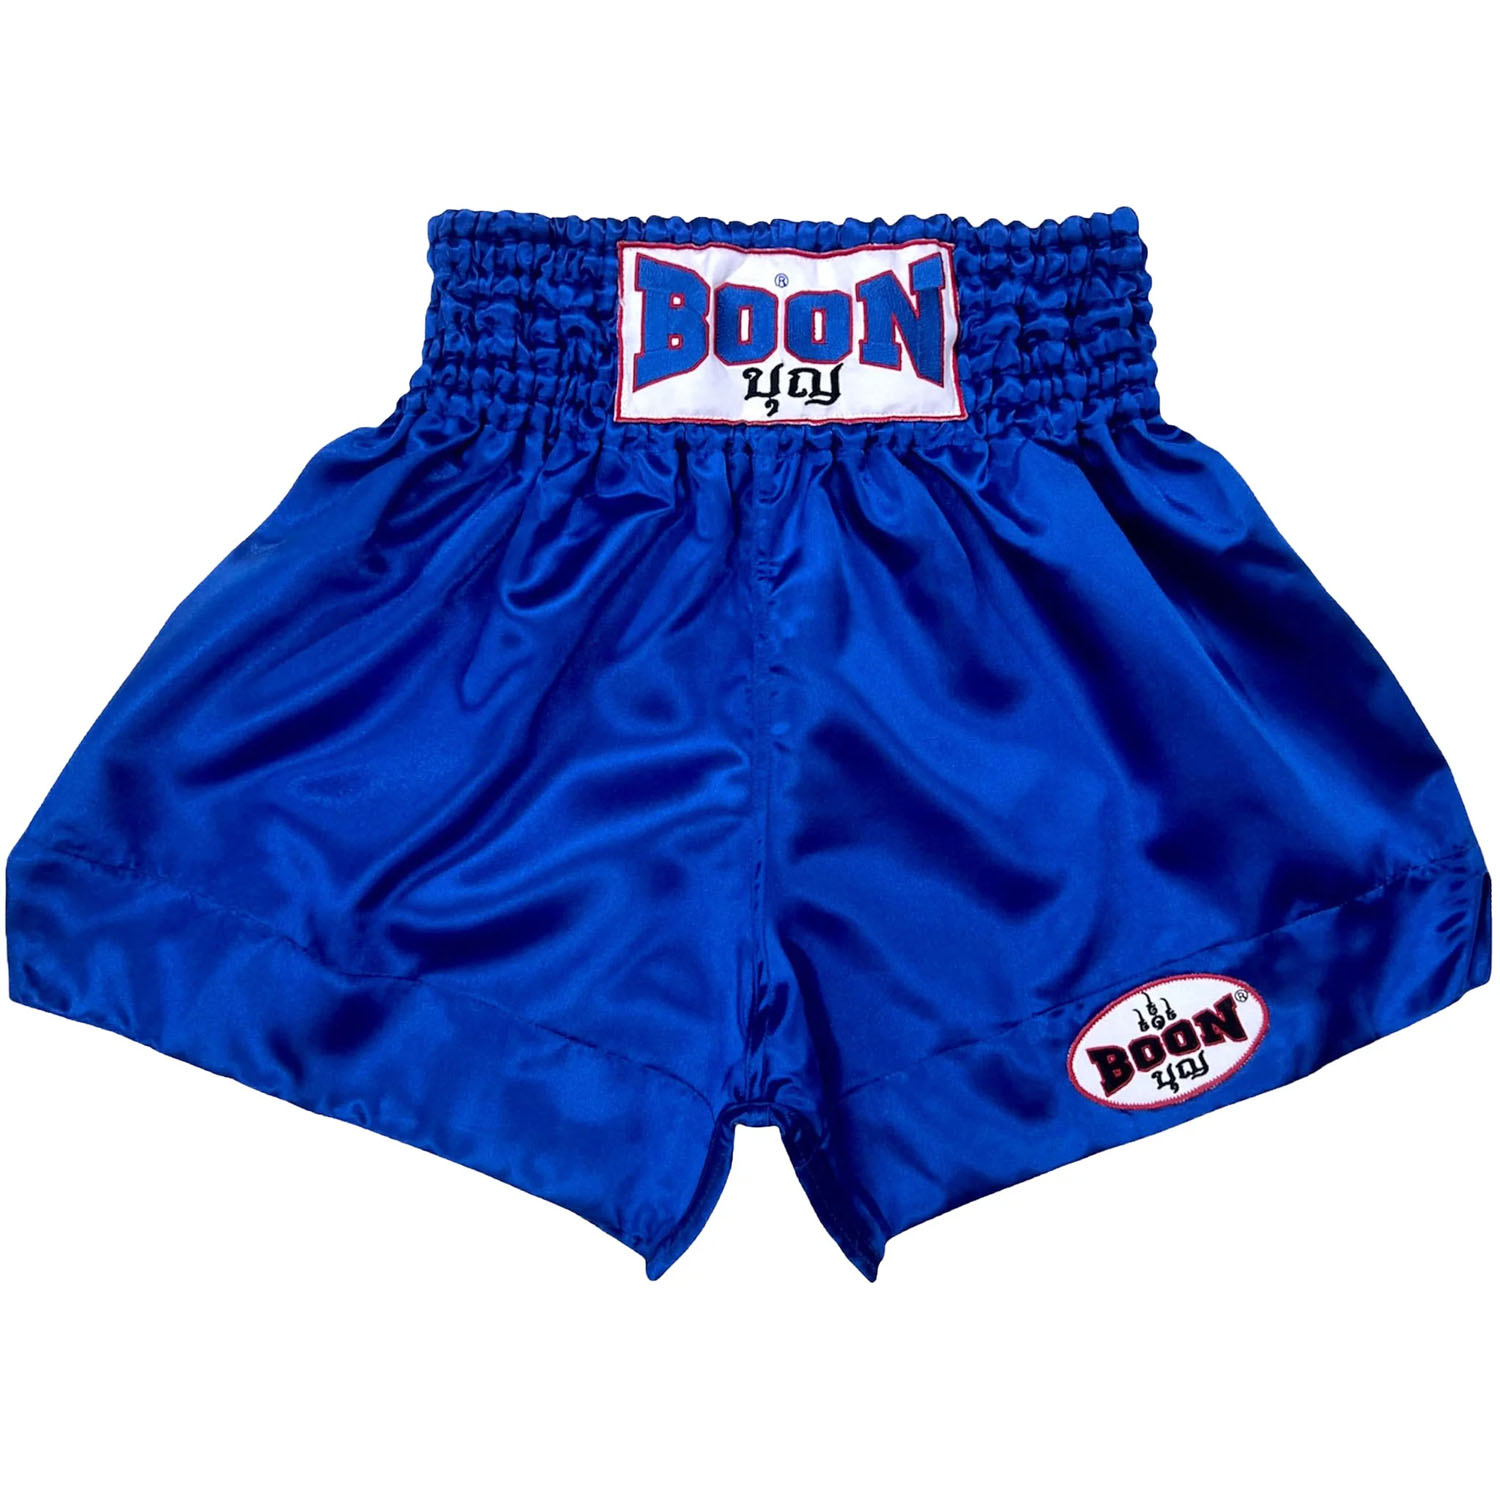 BOON Muay Thai Shorts, MT01, Plain, blue